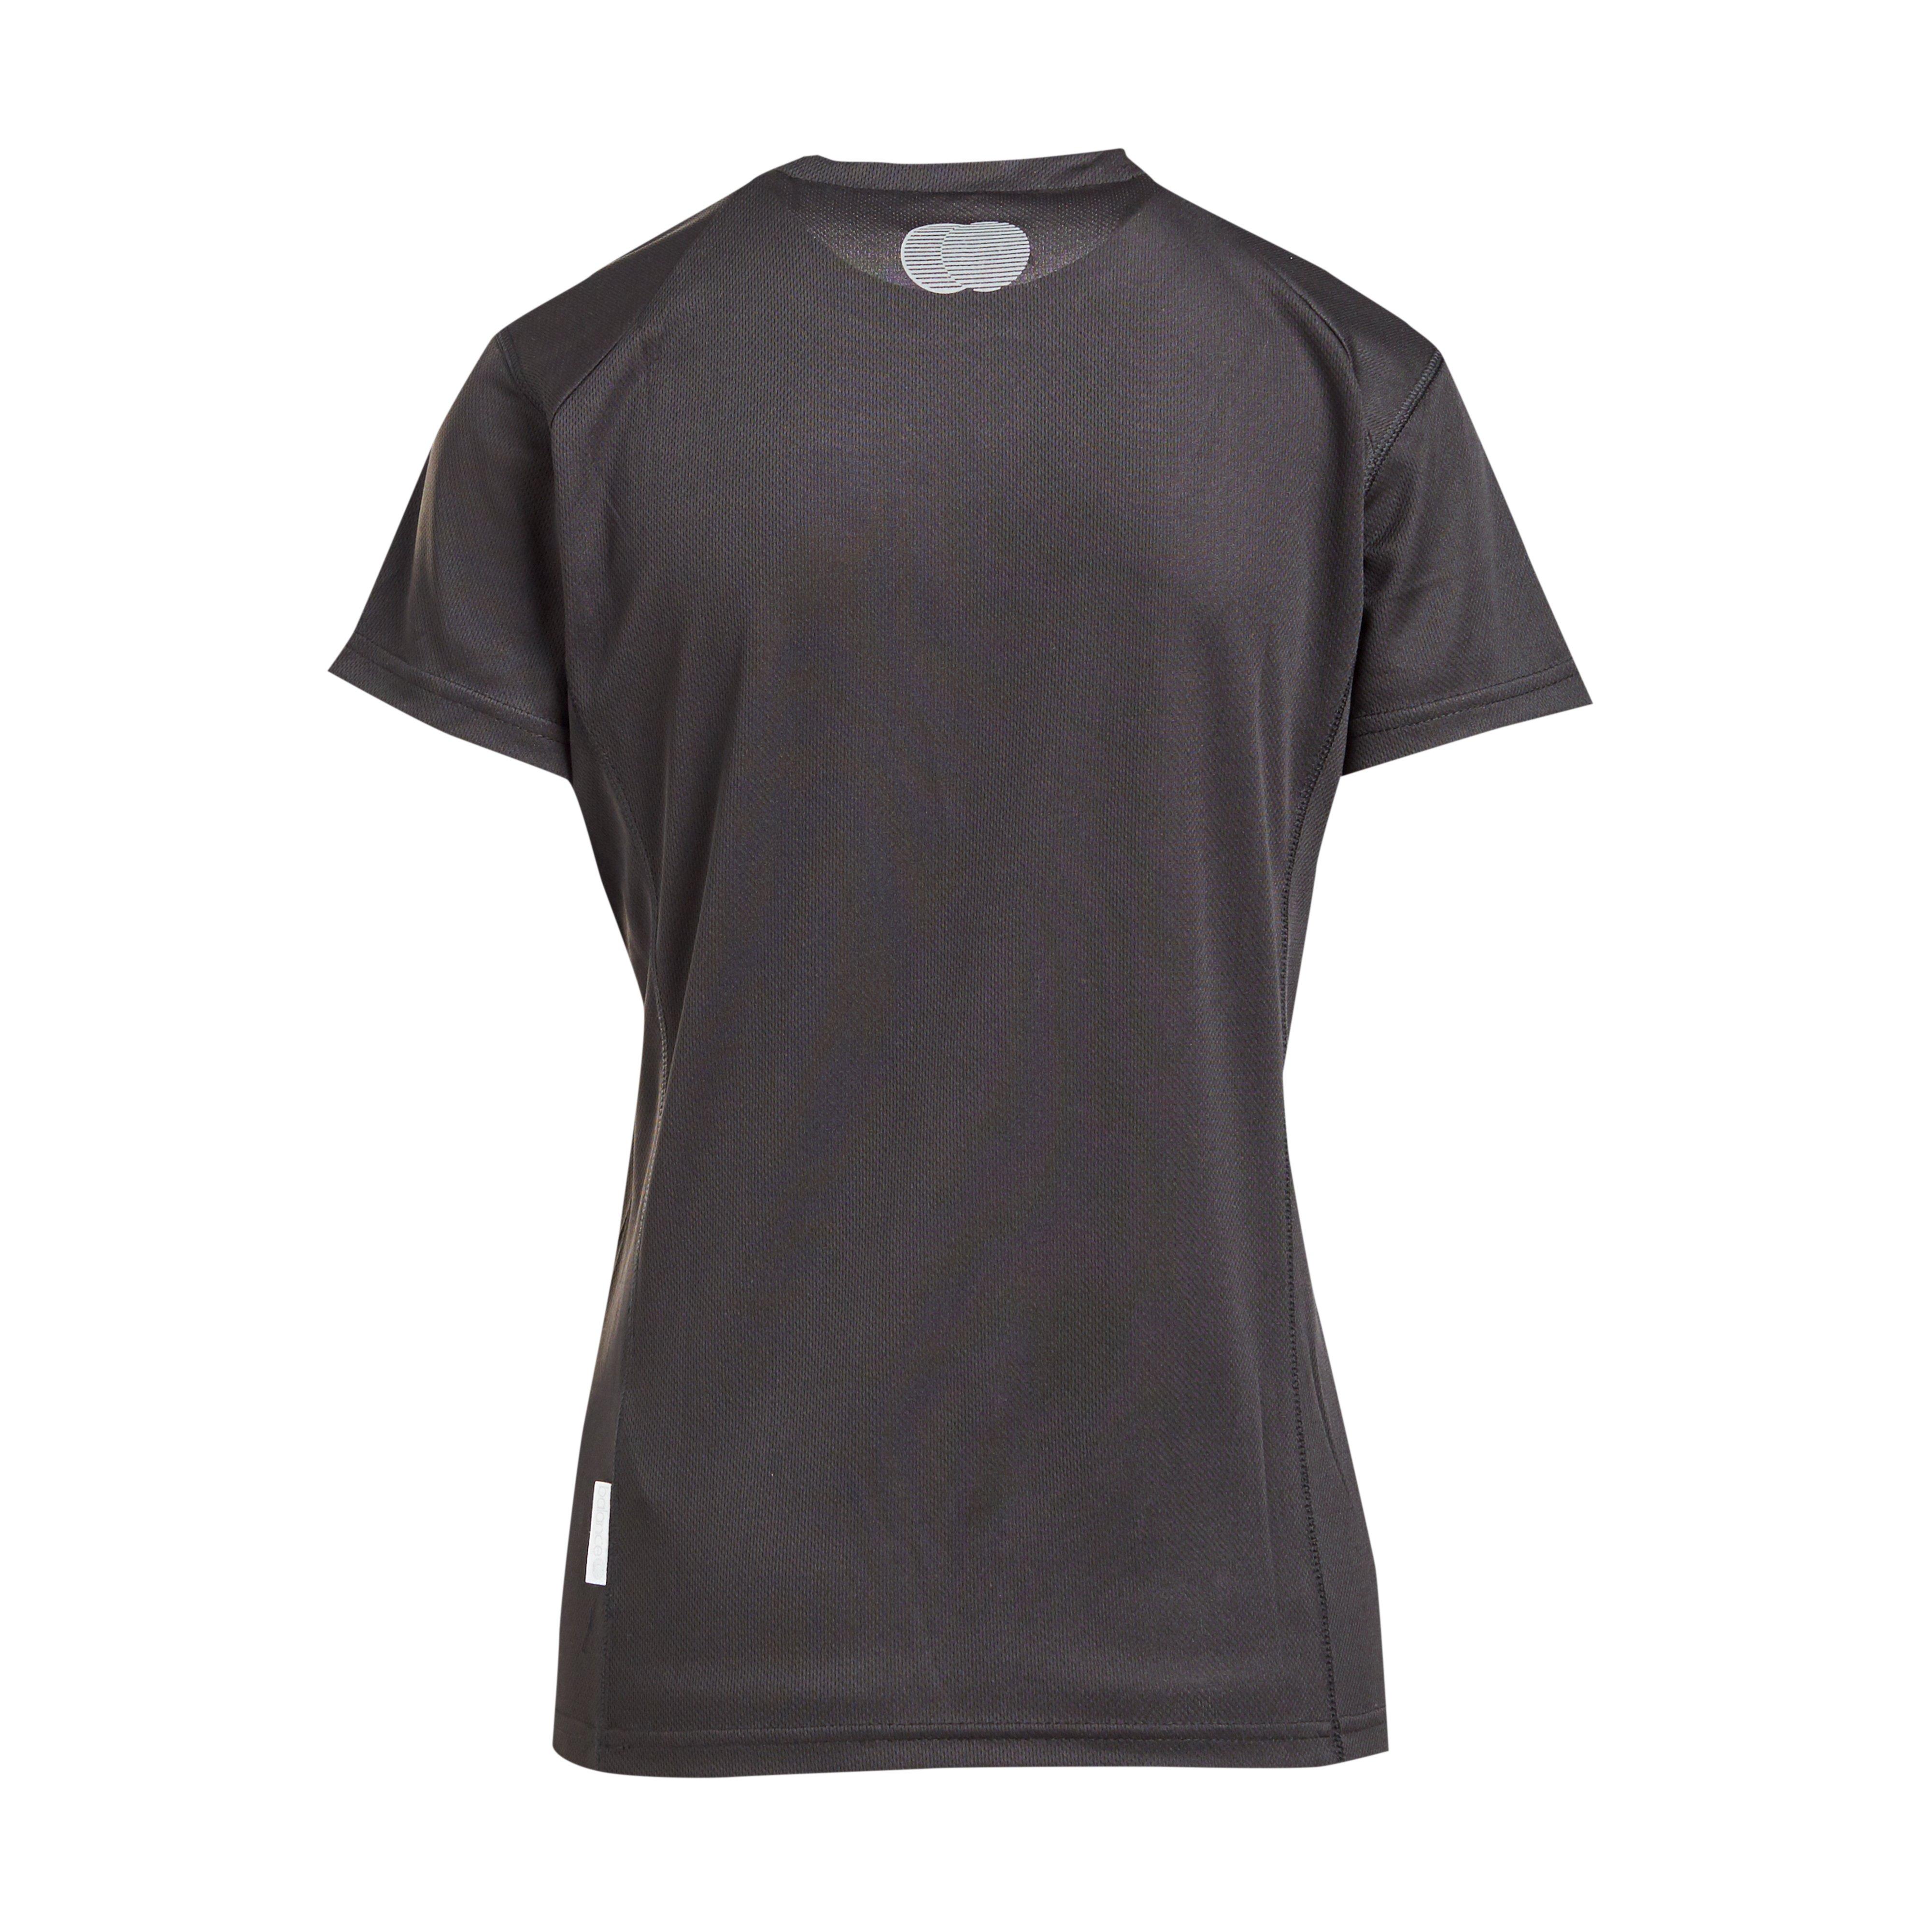 Peter Storm Women's Short Sleeve Balance T-Shirt Review